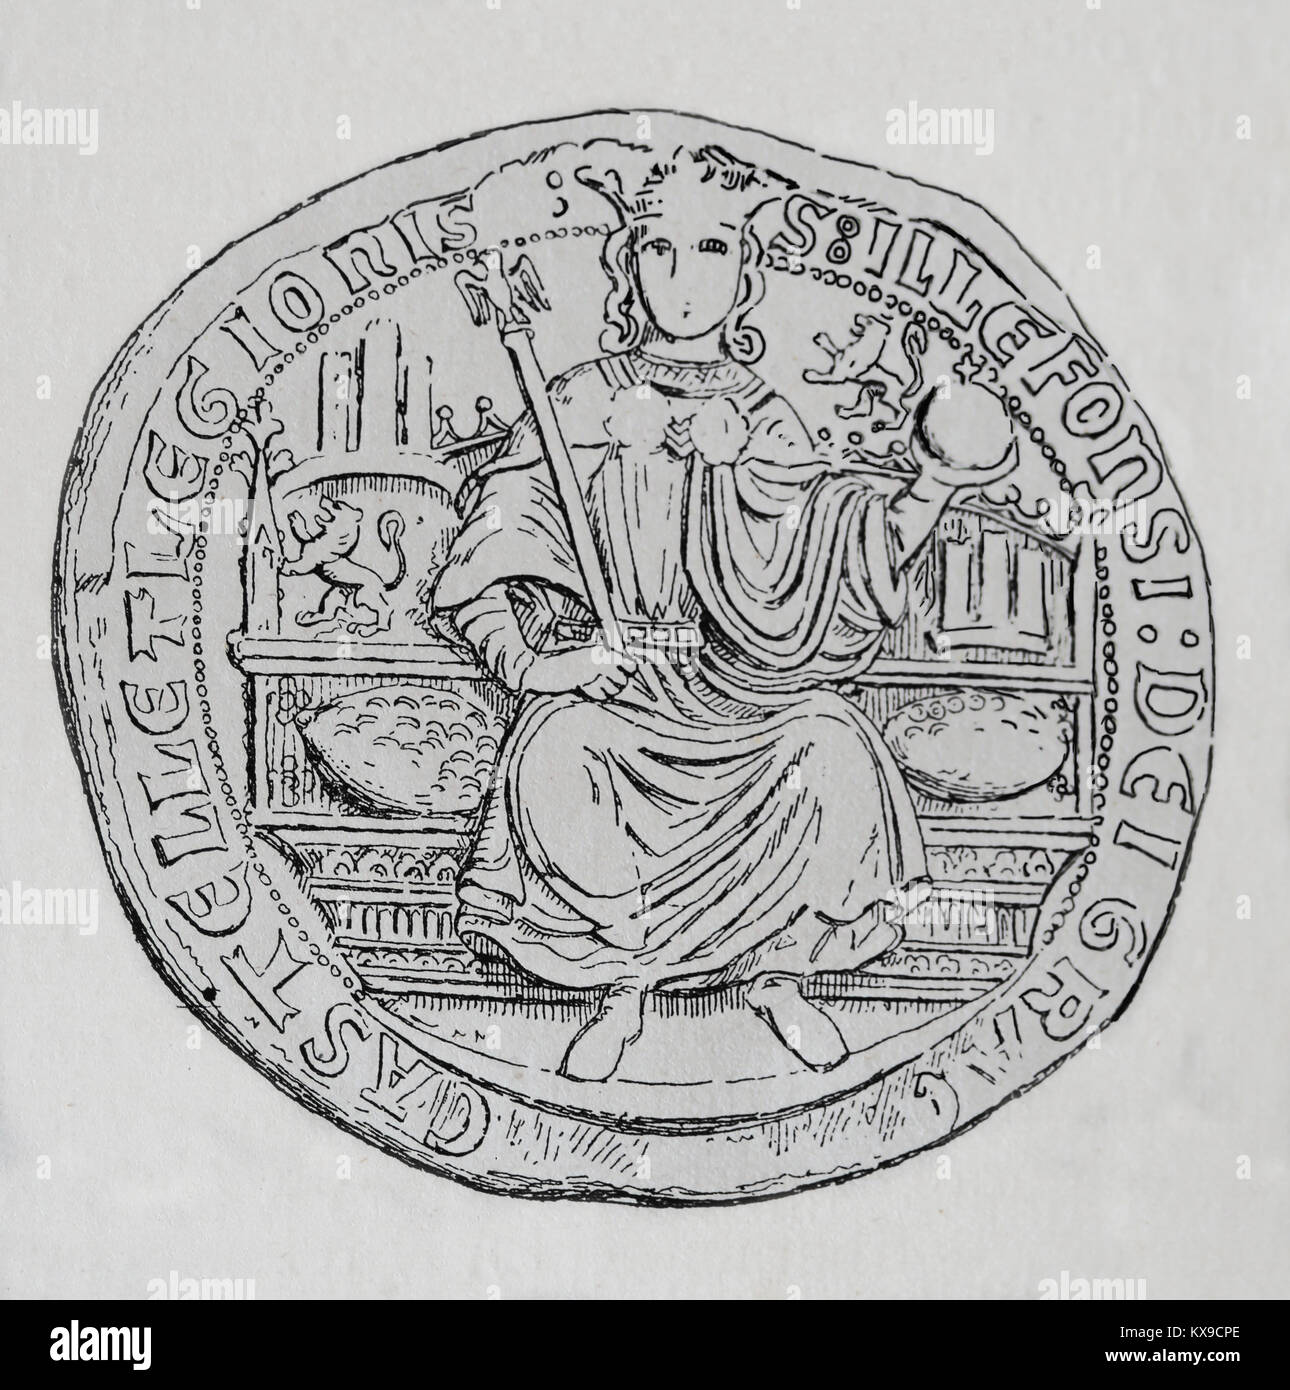 Alfonso XI di Castiglia (1311-1350) " il vendicatore'. Re di Castiglia e Leon e Galizia. Timbro. Incisione, 1879 Foto Stock